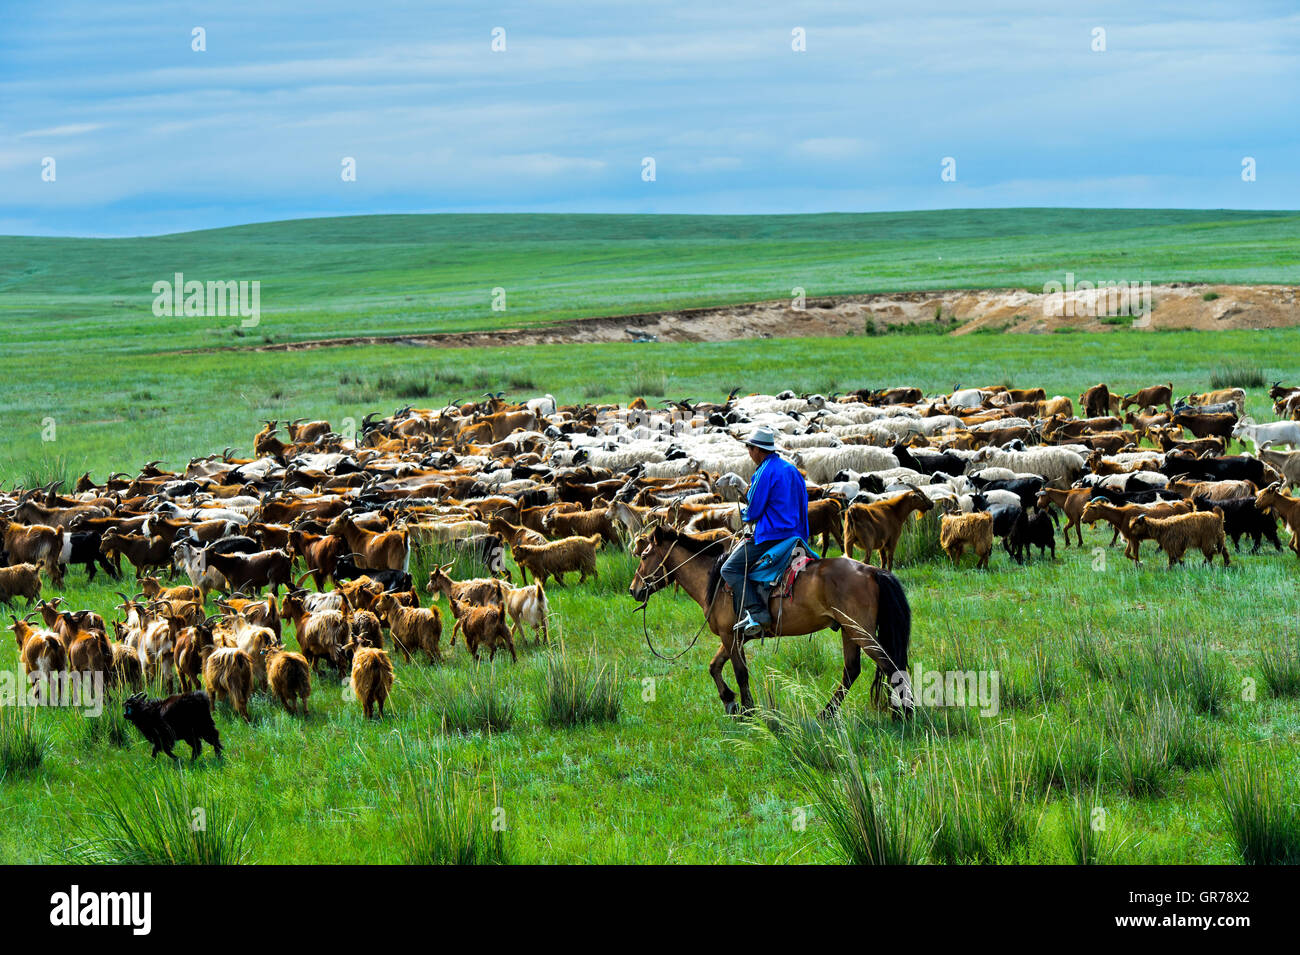 A Herd Of Kashmir Goats In The Mongolian Steppe, Dashinchilen, Bmongolia Stock Photo